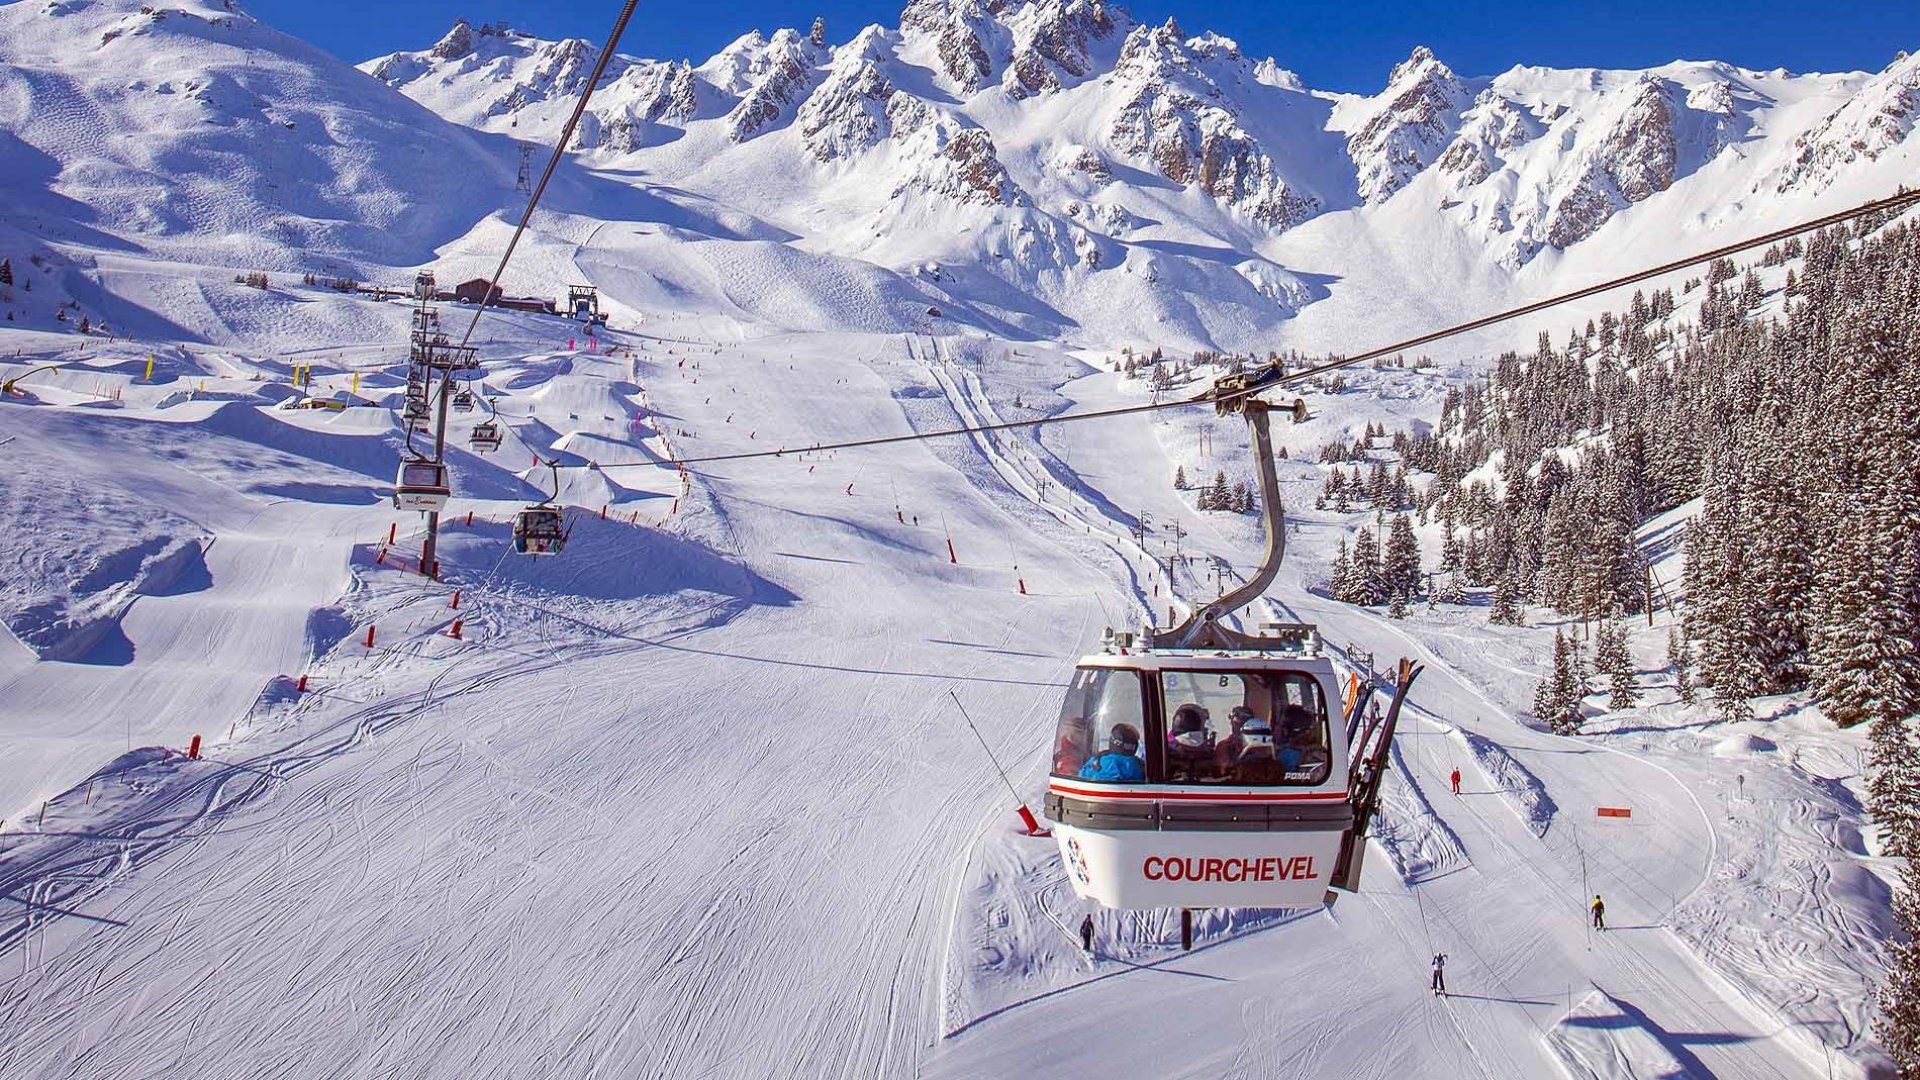 Courchevel Ski Area A Complete Resort Guide Piste Maps